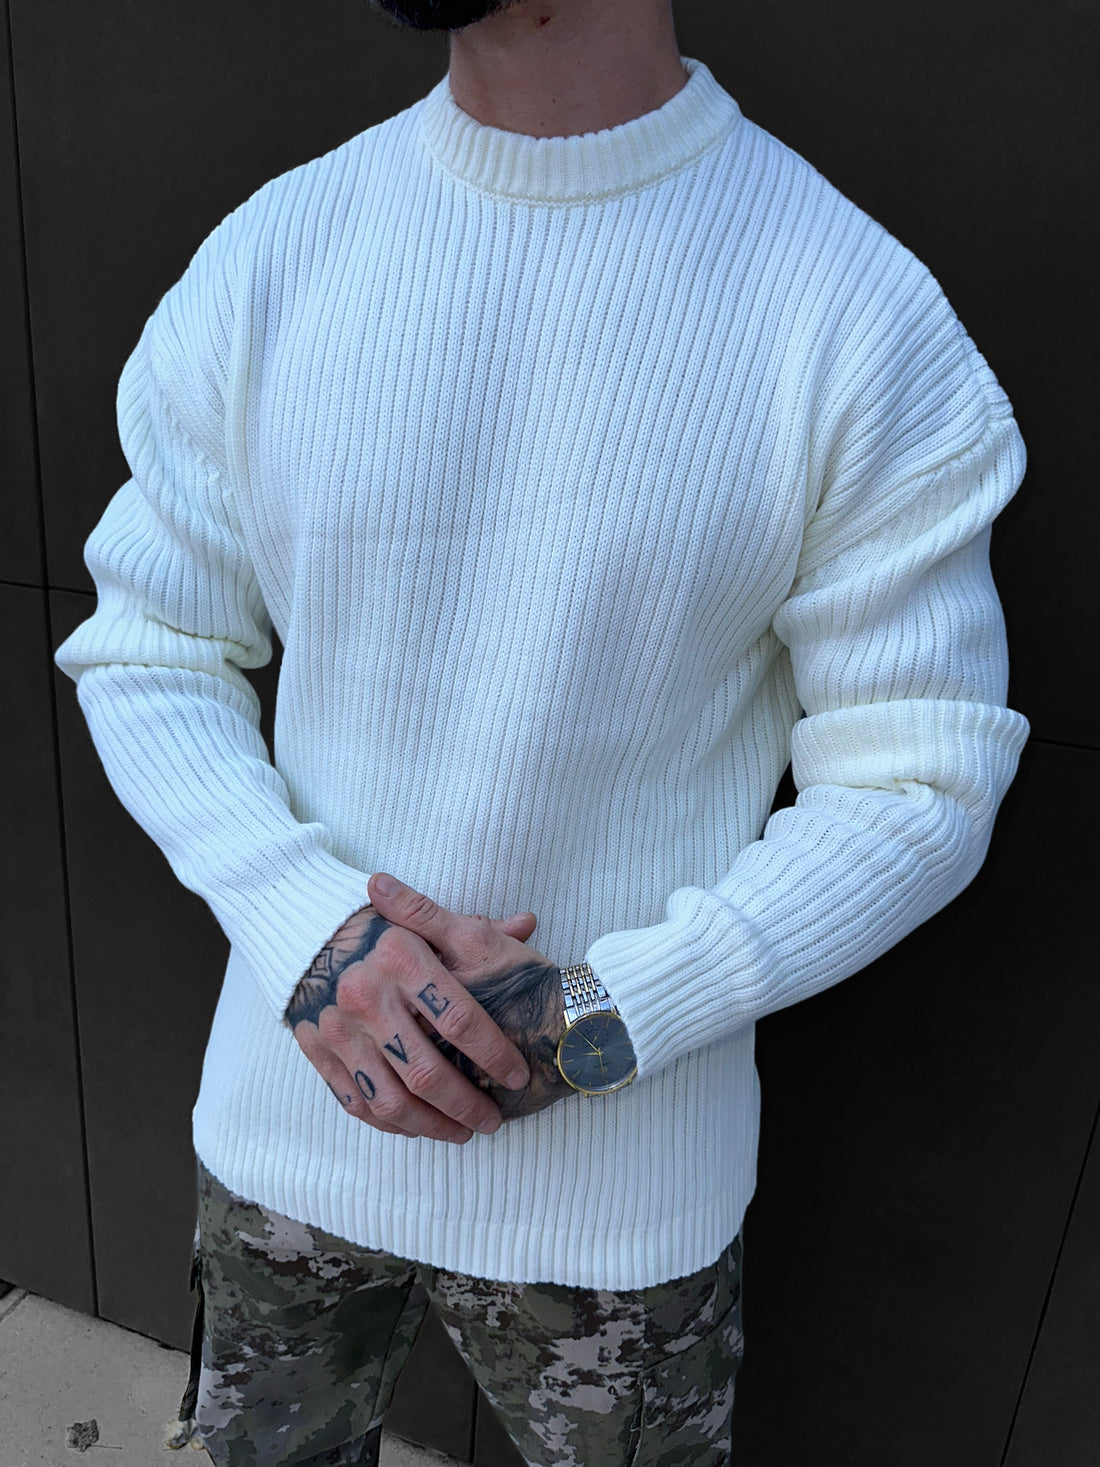 IKAO - White knit sweater